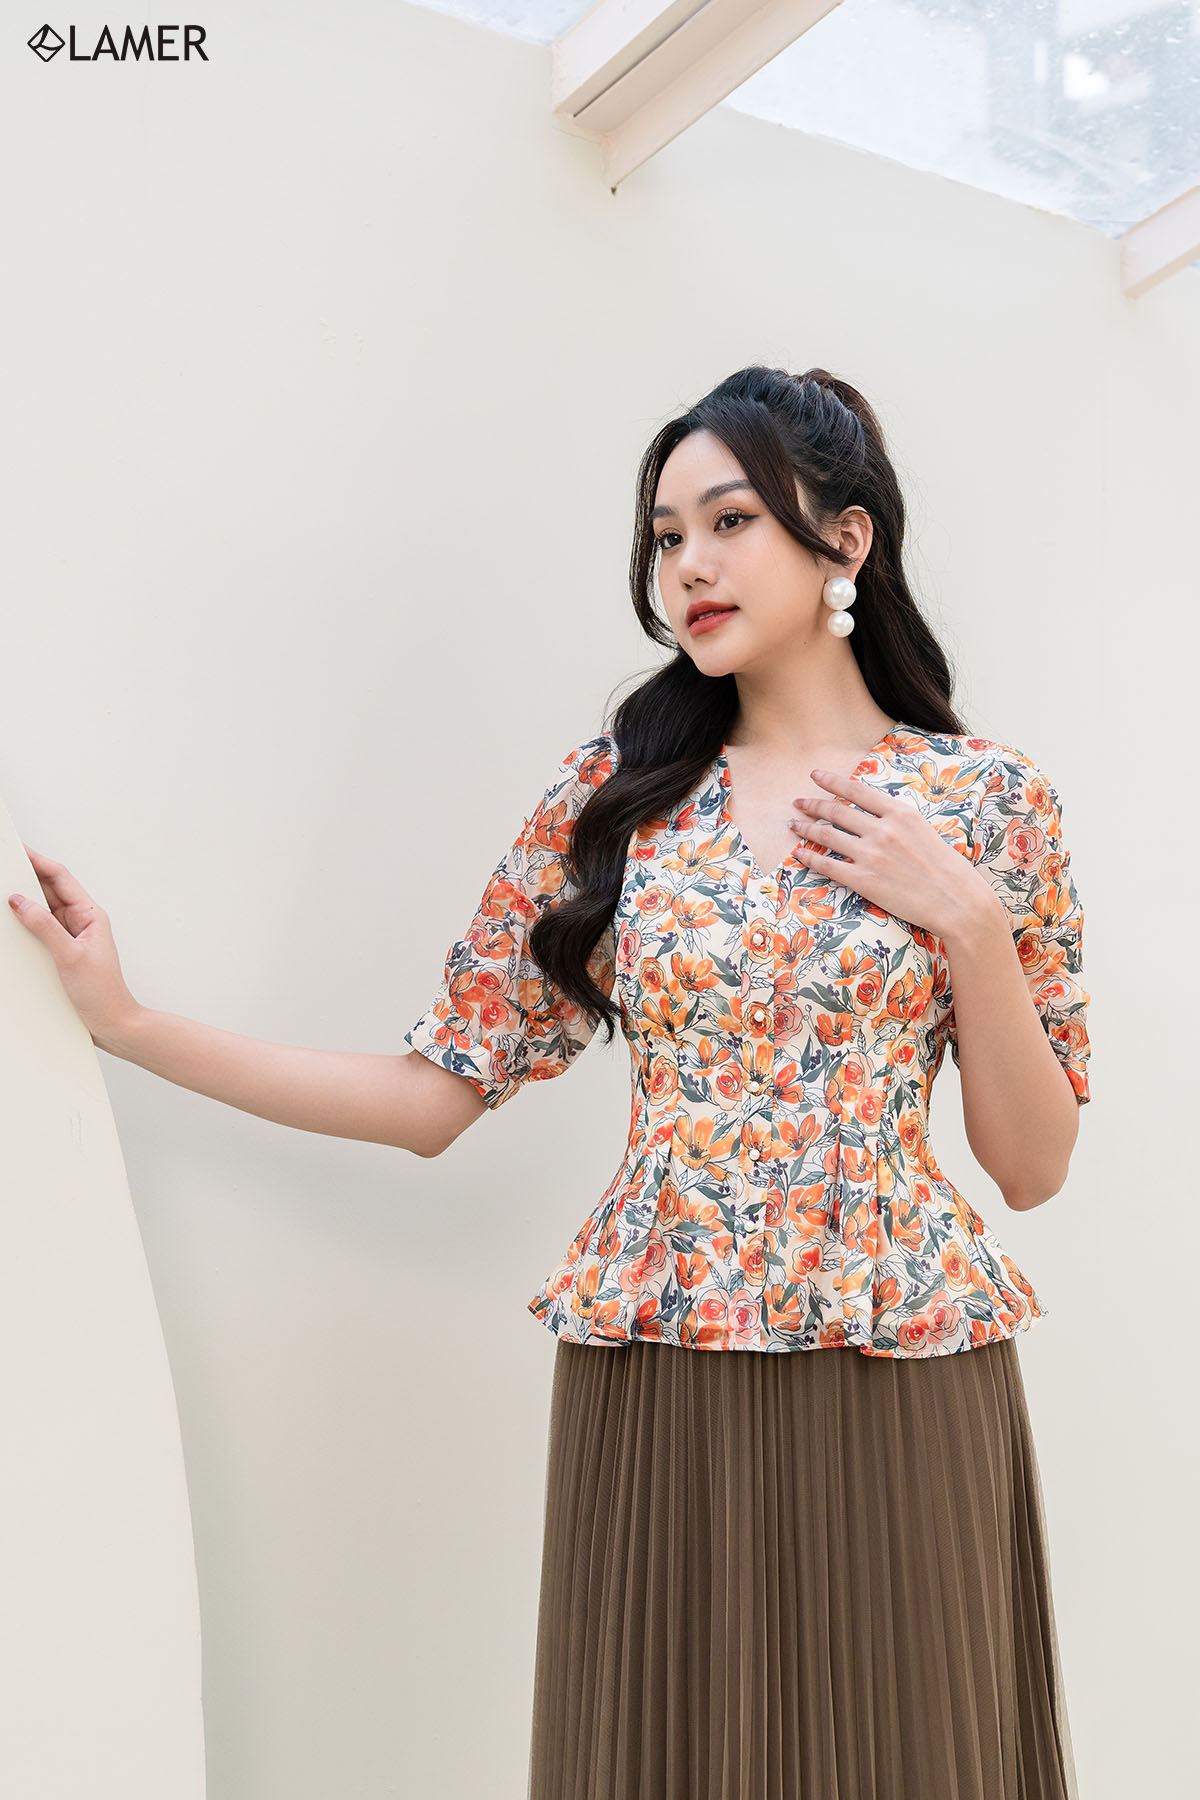 Thời trang công sở Lamer Fashion & 4 kiểu phối đồ kinh điển làm hài lòng mọi phụ nữ Việt - Ảnh 3.